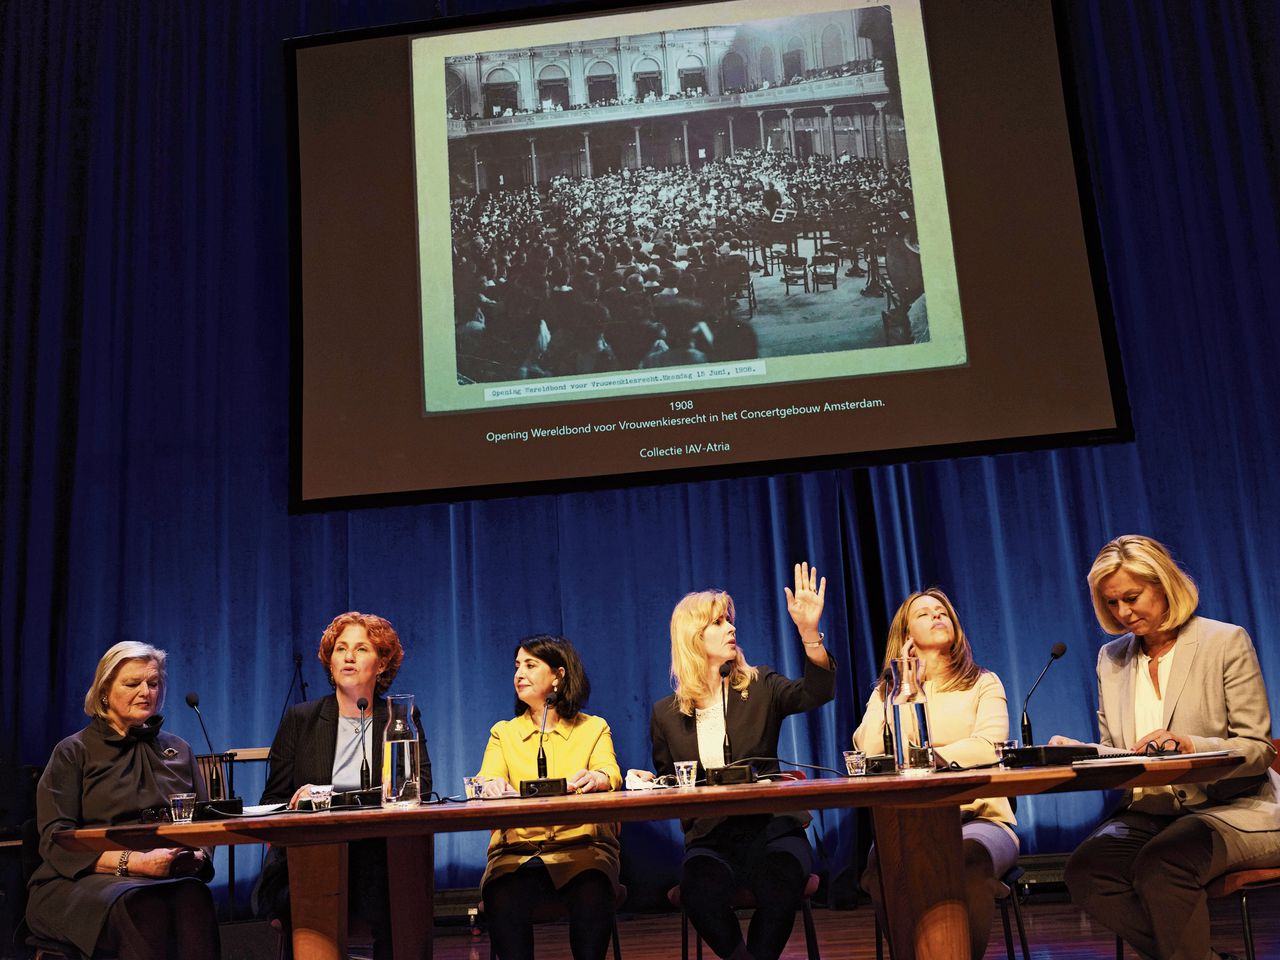 Politici voerden in Theater Frascati een ‘re-enactment’ op van het debat over de invoering van vrouwenkiesrecht. Van links naar rechts: Ankie Broekers, Kathalijne Buitenweg, Khadija Arib, Mona Keijzer, Carola Schouten en Sigrid Kaag.